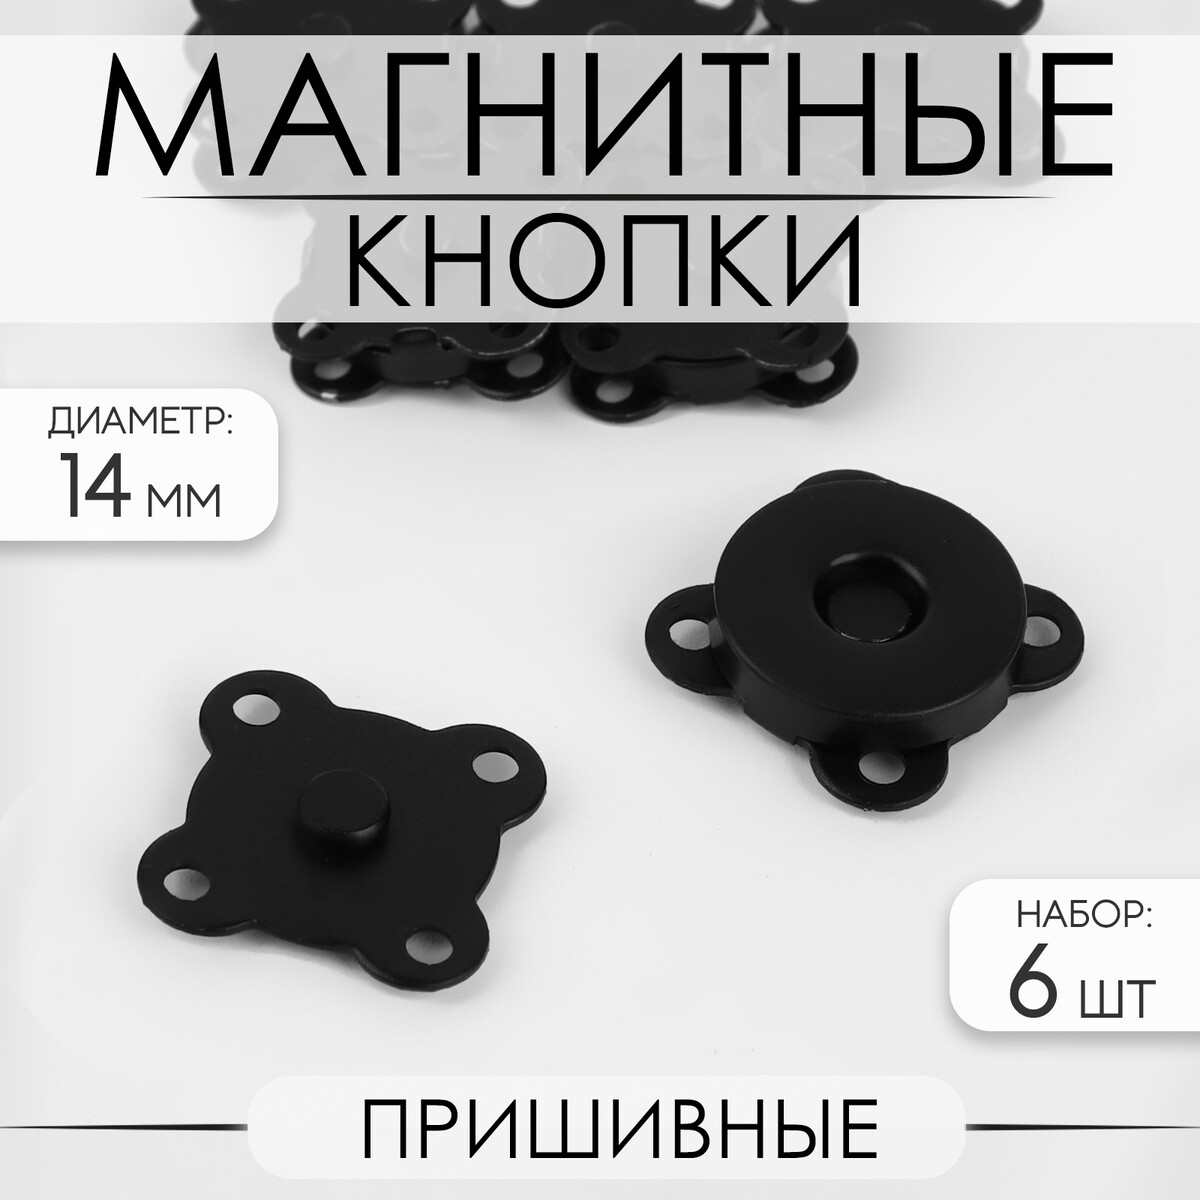 Кнопки магнитные, пришивные, d = 14 мм, 6 шт, цвет черный матовый